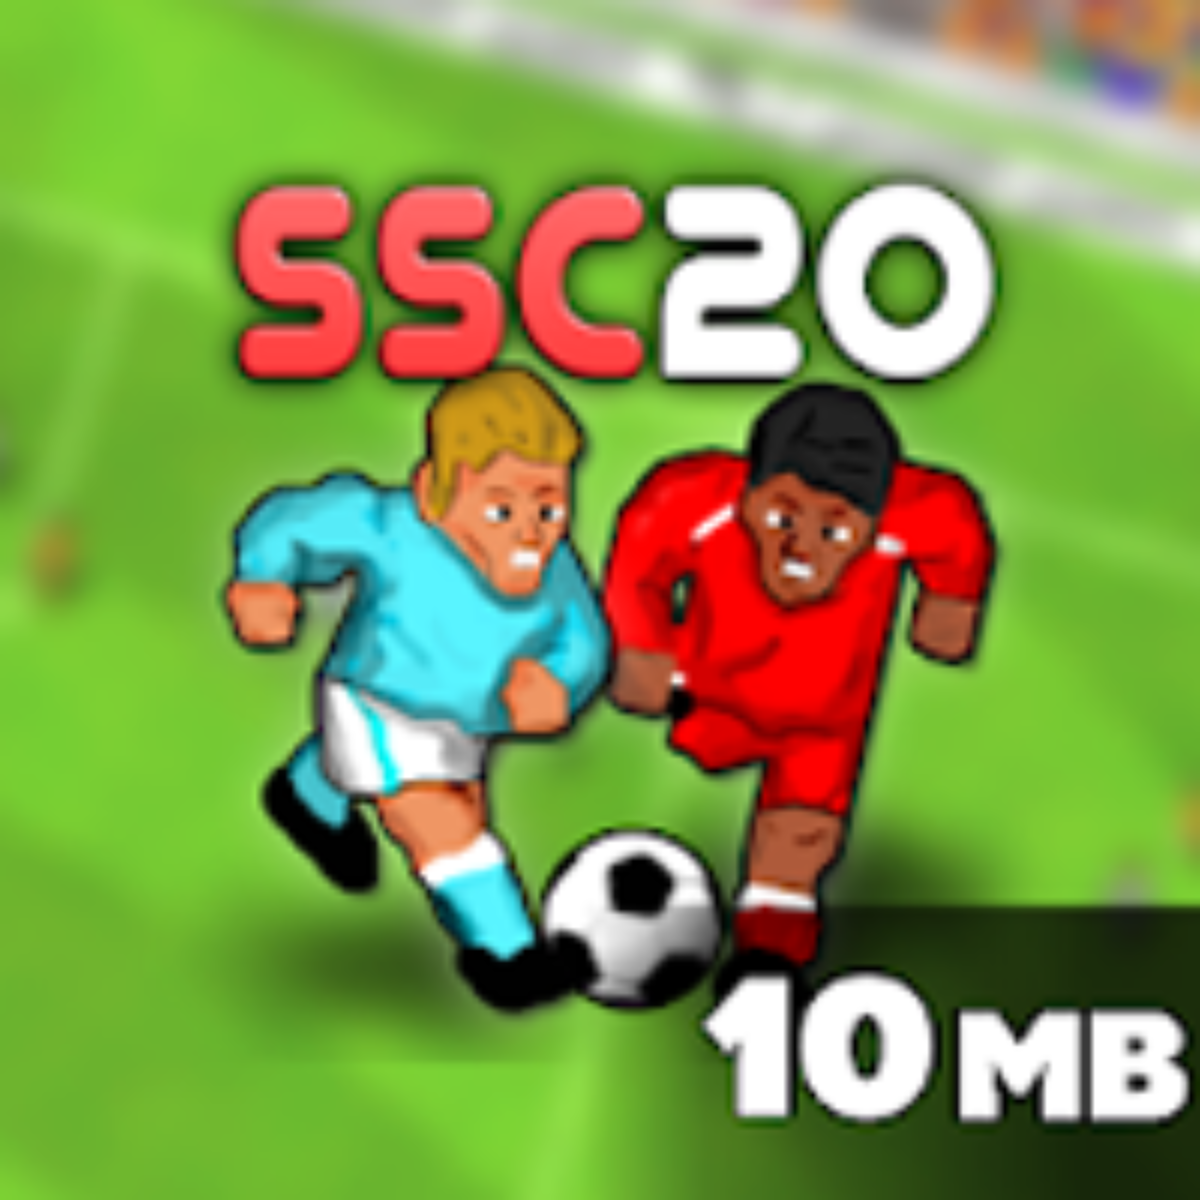 Soccer Star 23 Super Football v1.23.1 Apk Mod [Dinheiro Infinito]